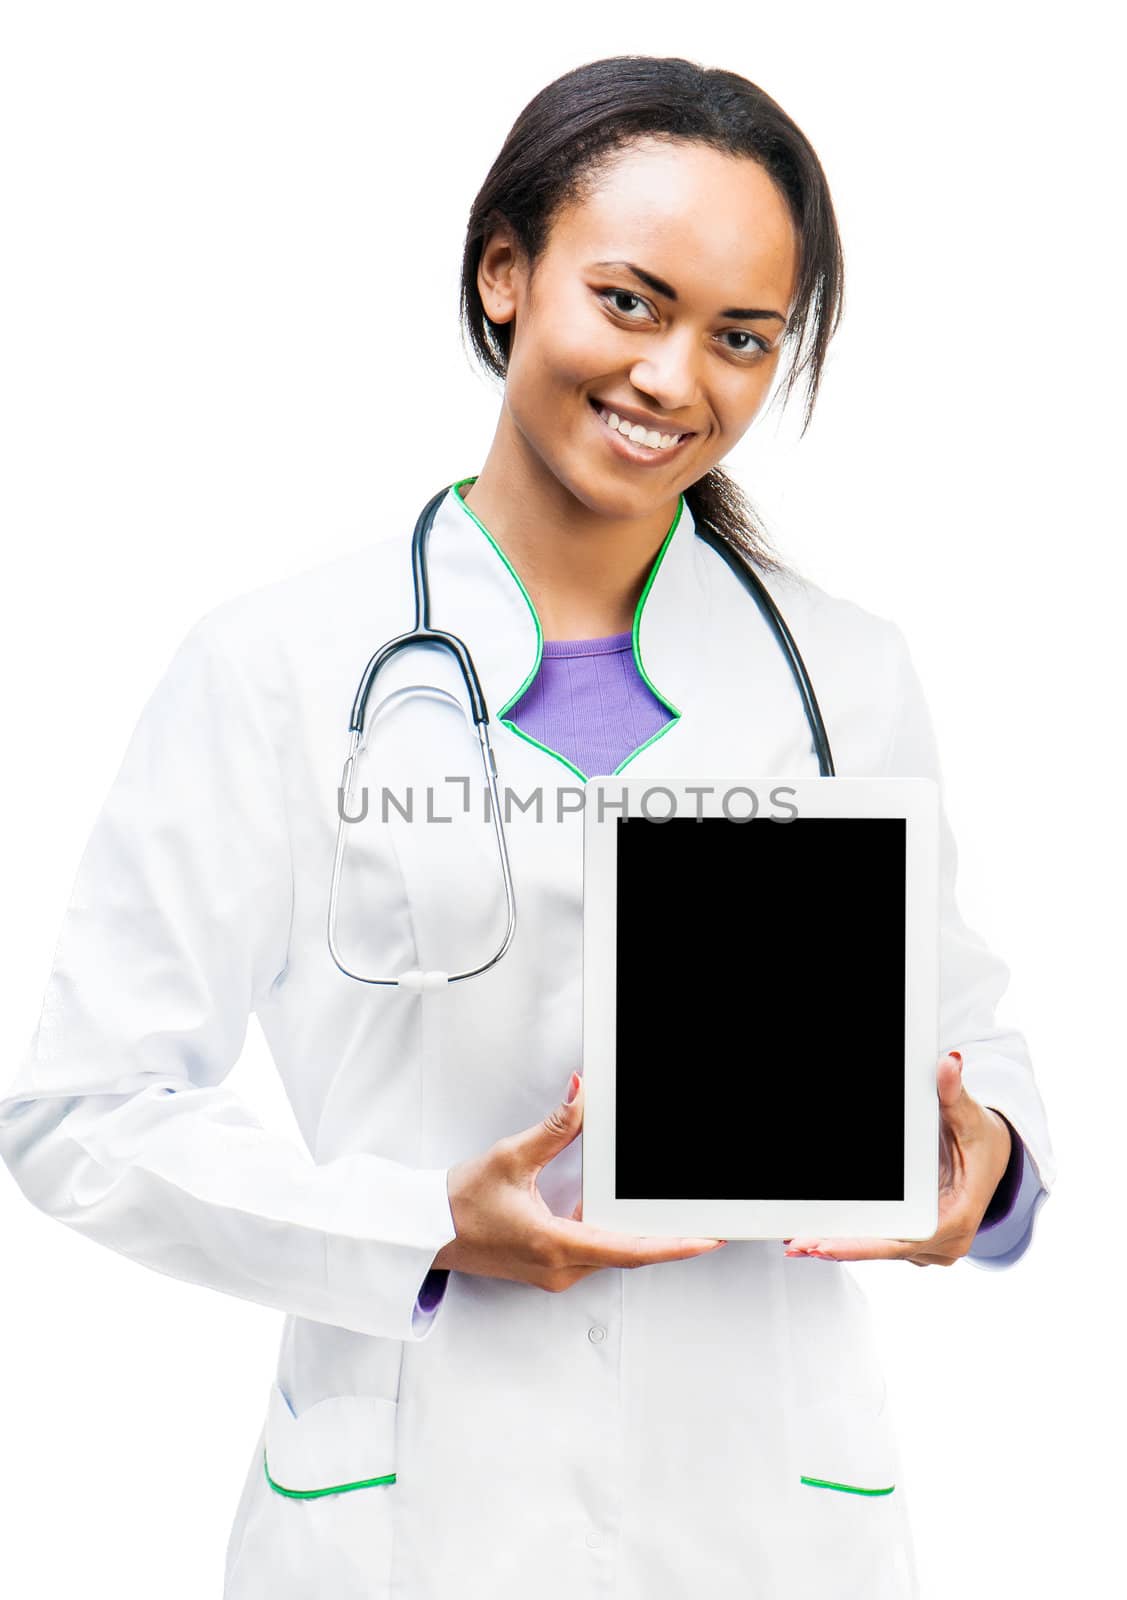 Doctor With Digital Tablet by GekaSkr